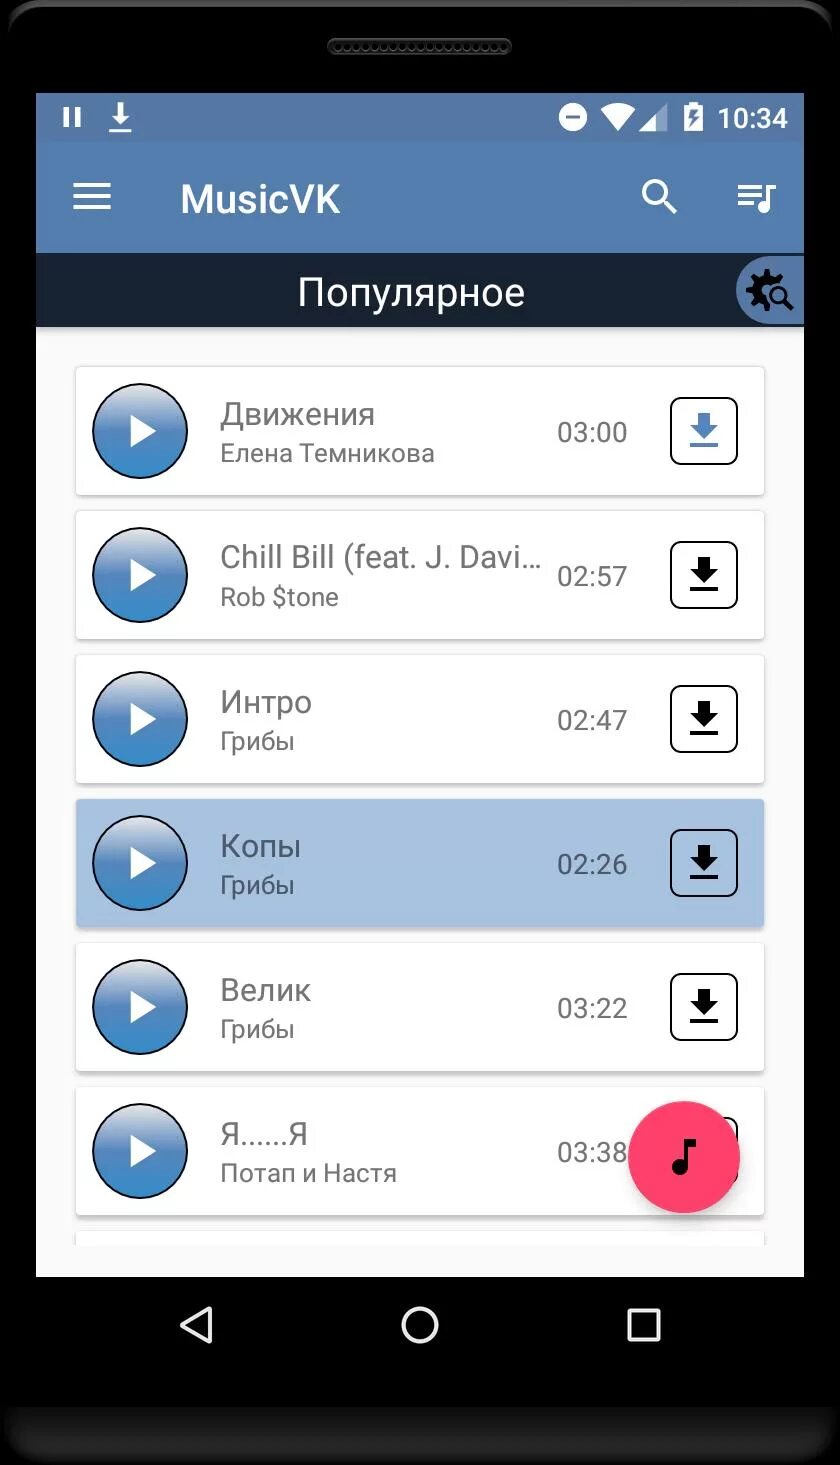 Программы для скачивания музыки на телефон. Приложения для скачивания музыки из ВК на компьютер. Музыка ВКОНТАКТЕ. ВК ВКОНТАКТЕ музыка. VKMUSIC приложение для Android.